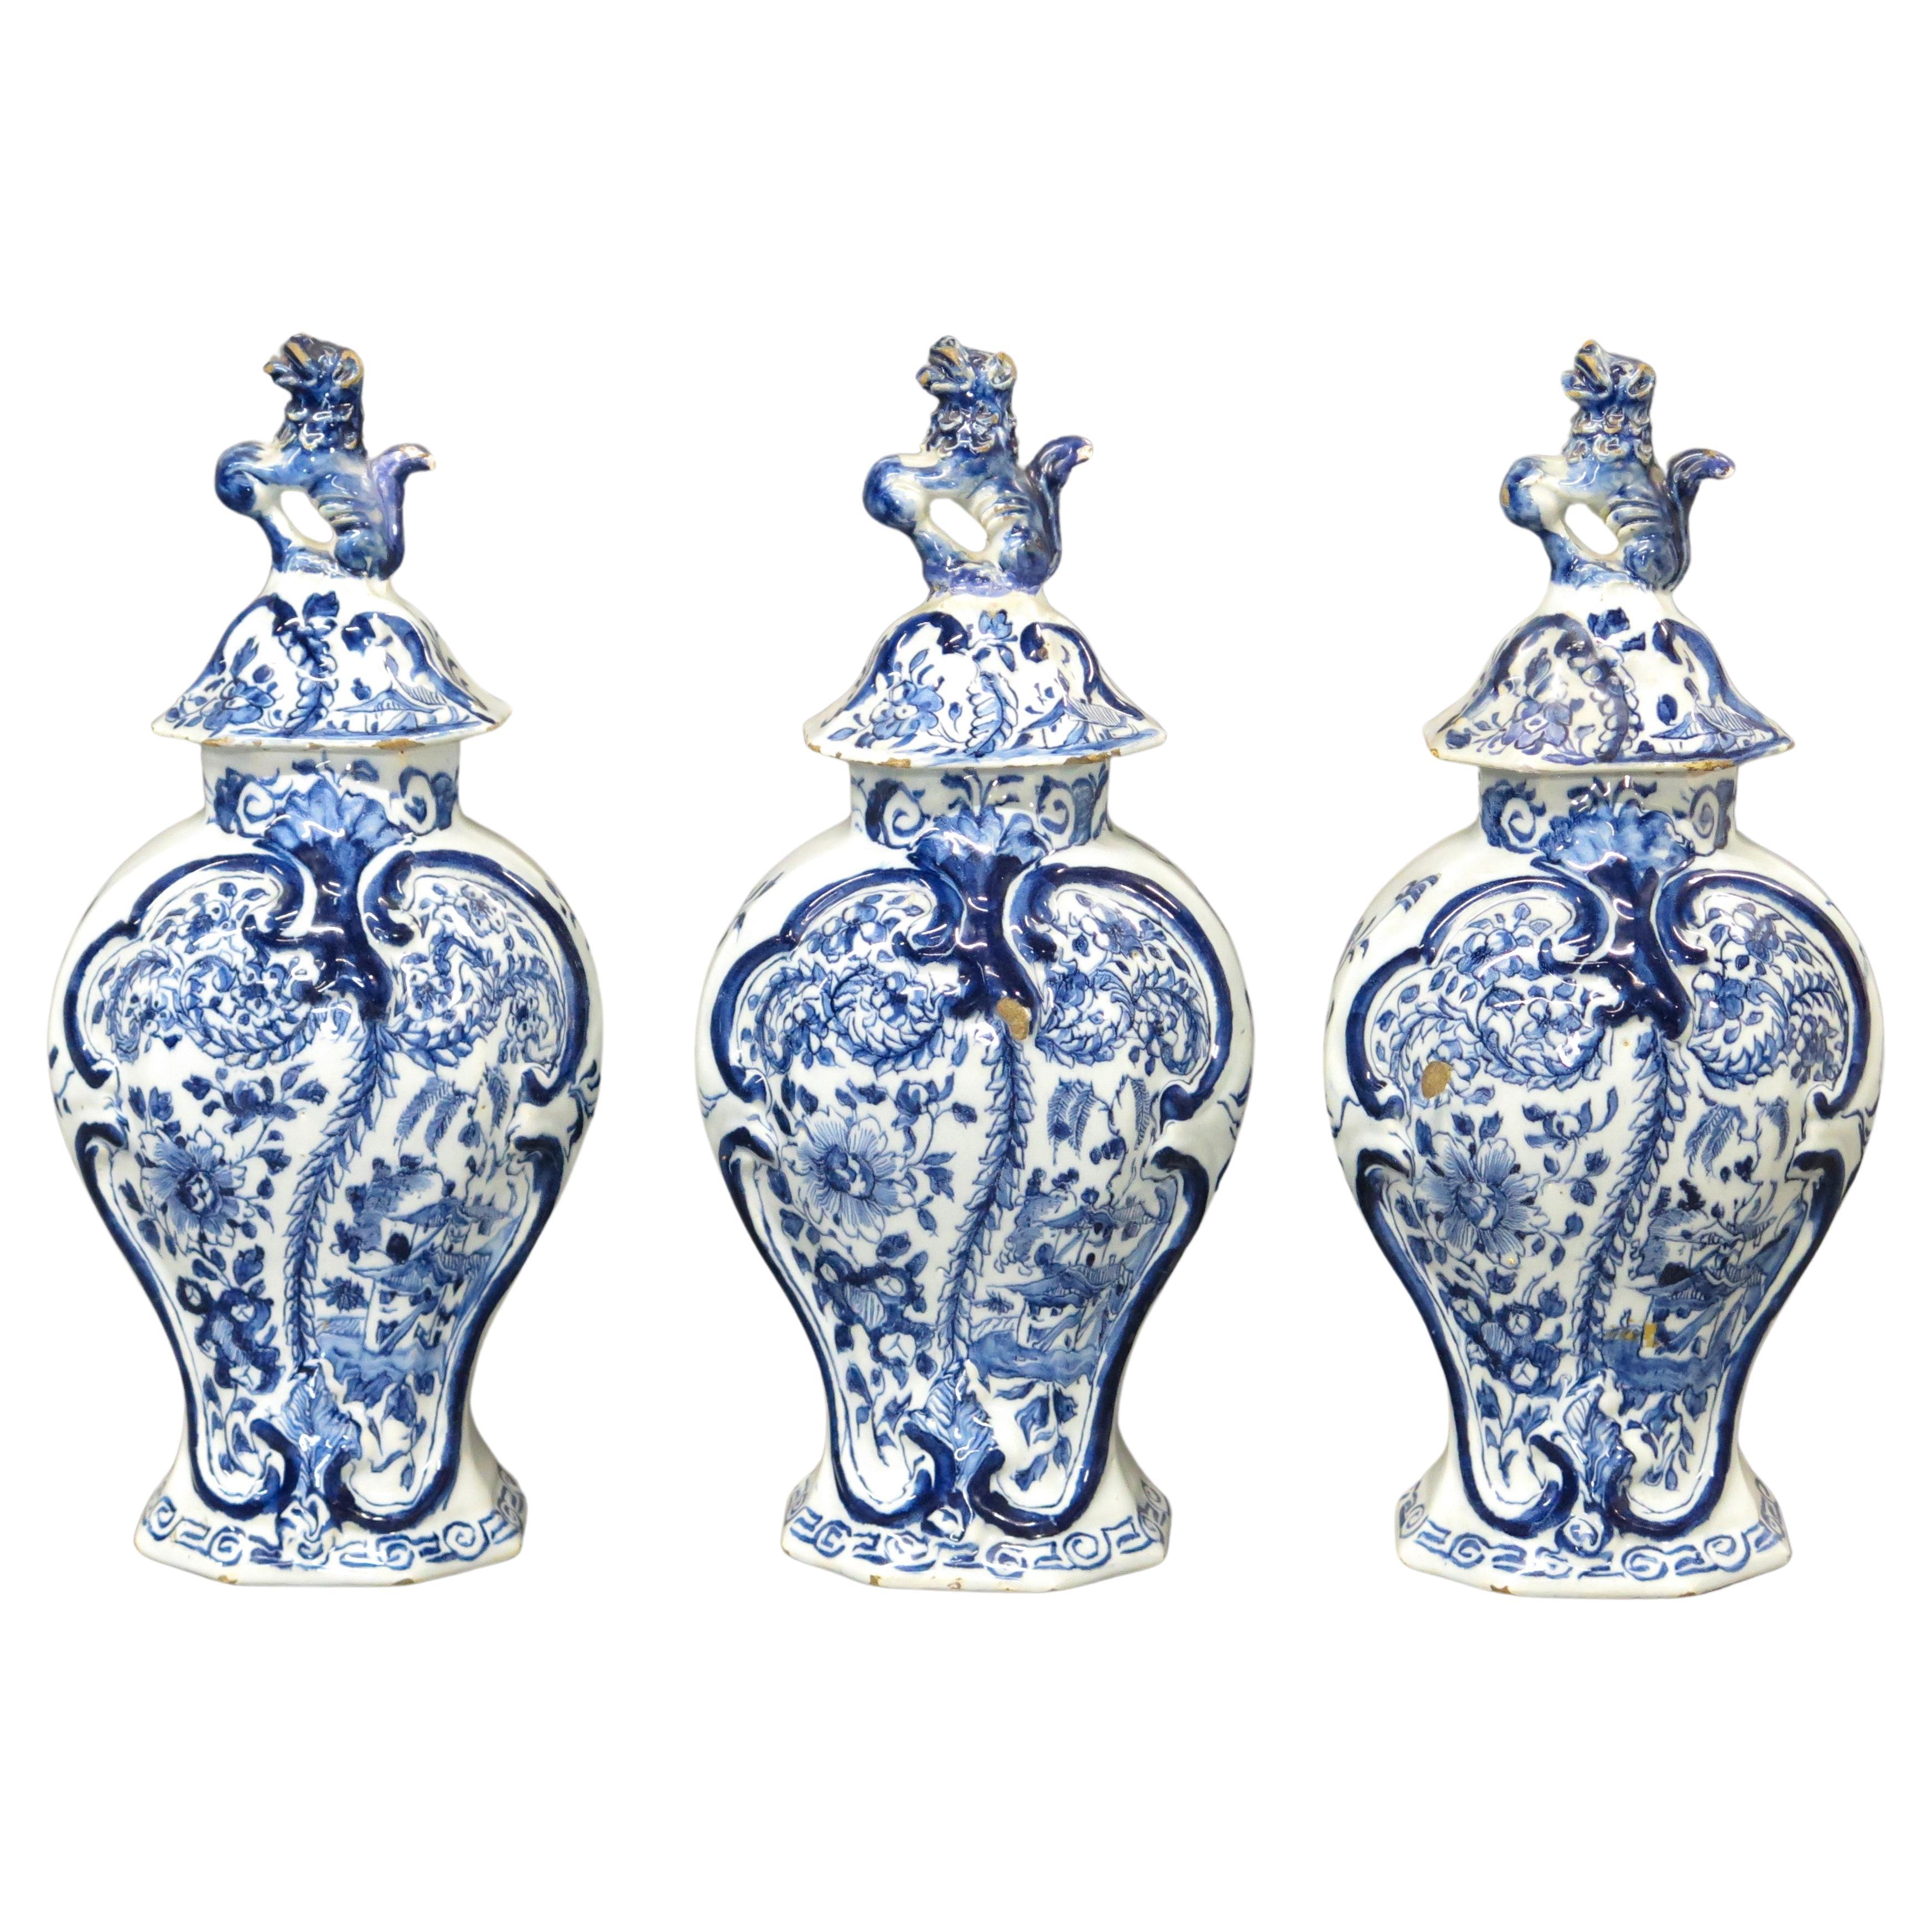 Garniture hollandaise de Delft 3 pièces ~ ensemble de vases à couvercle du 18ème siècle